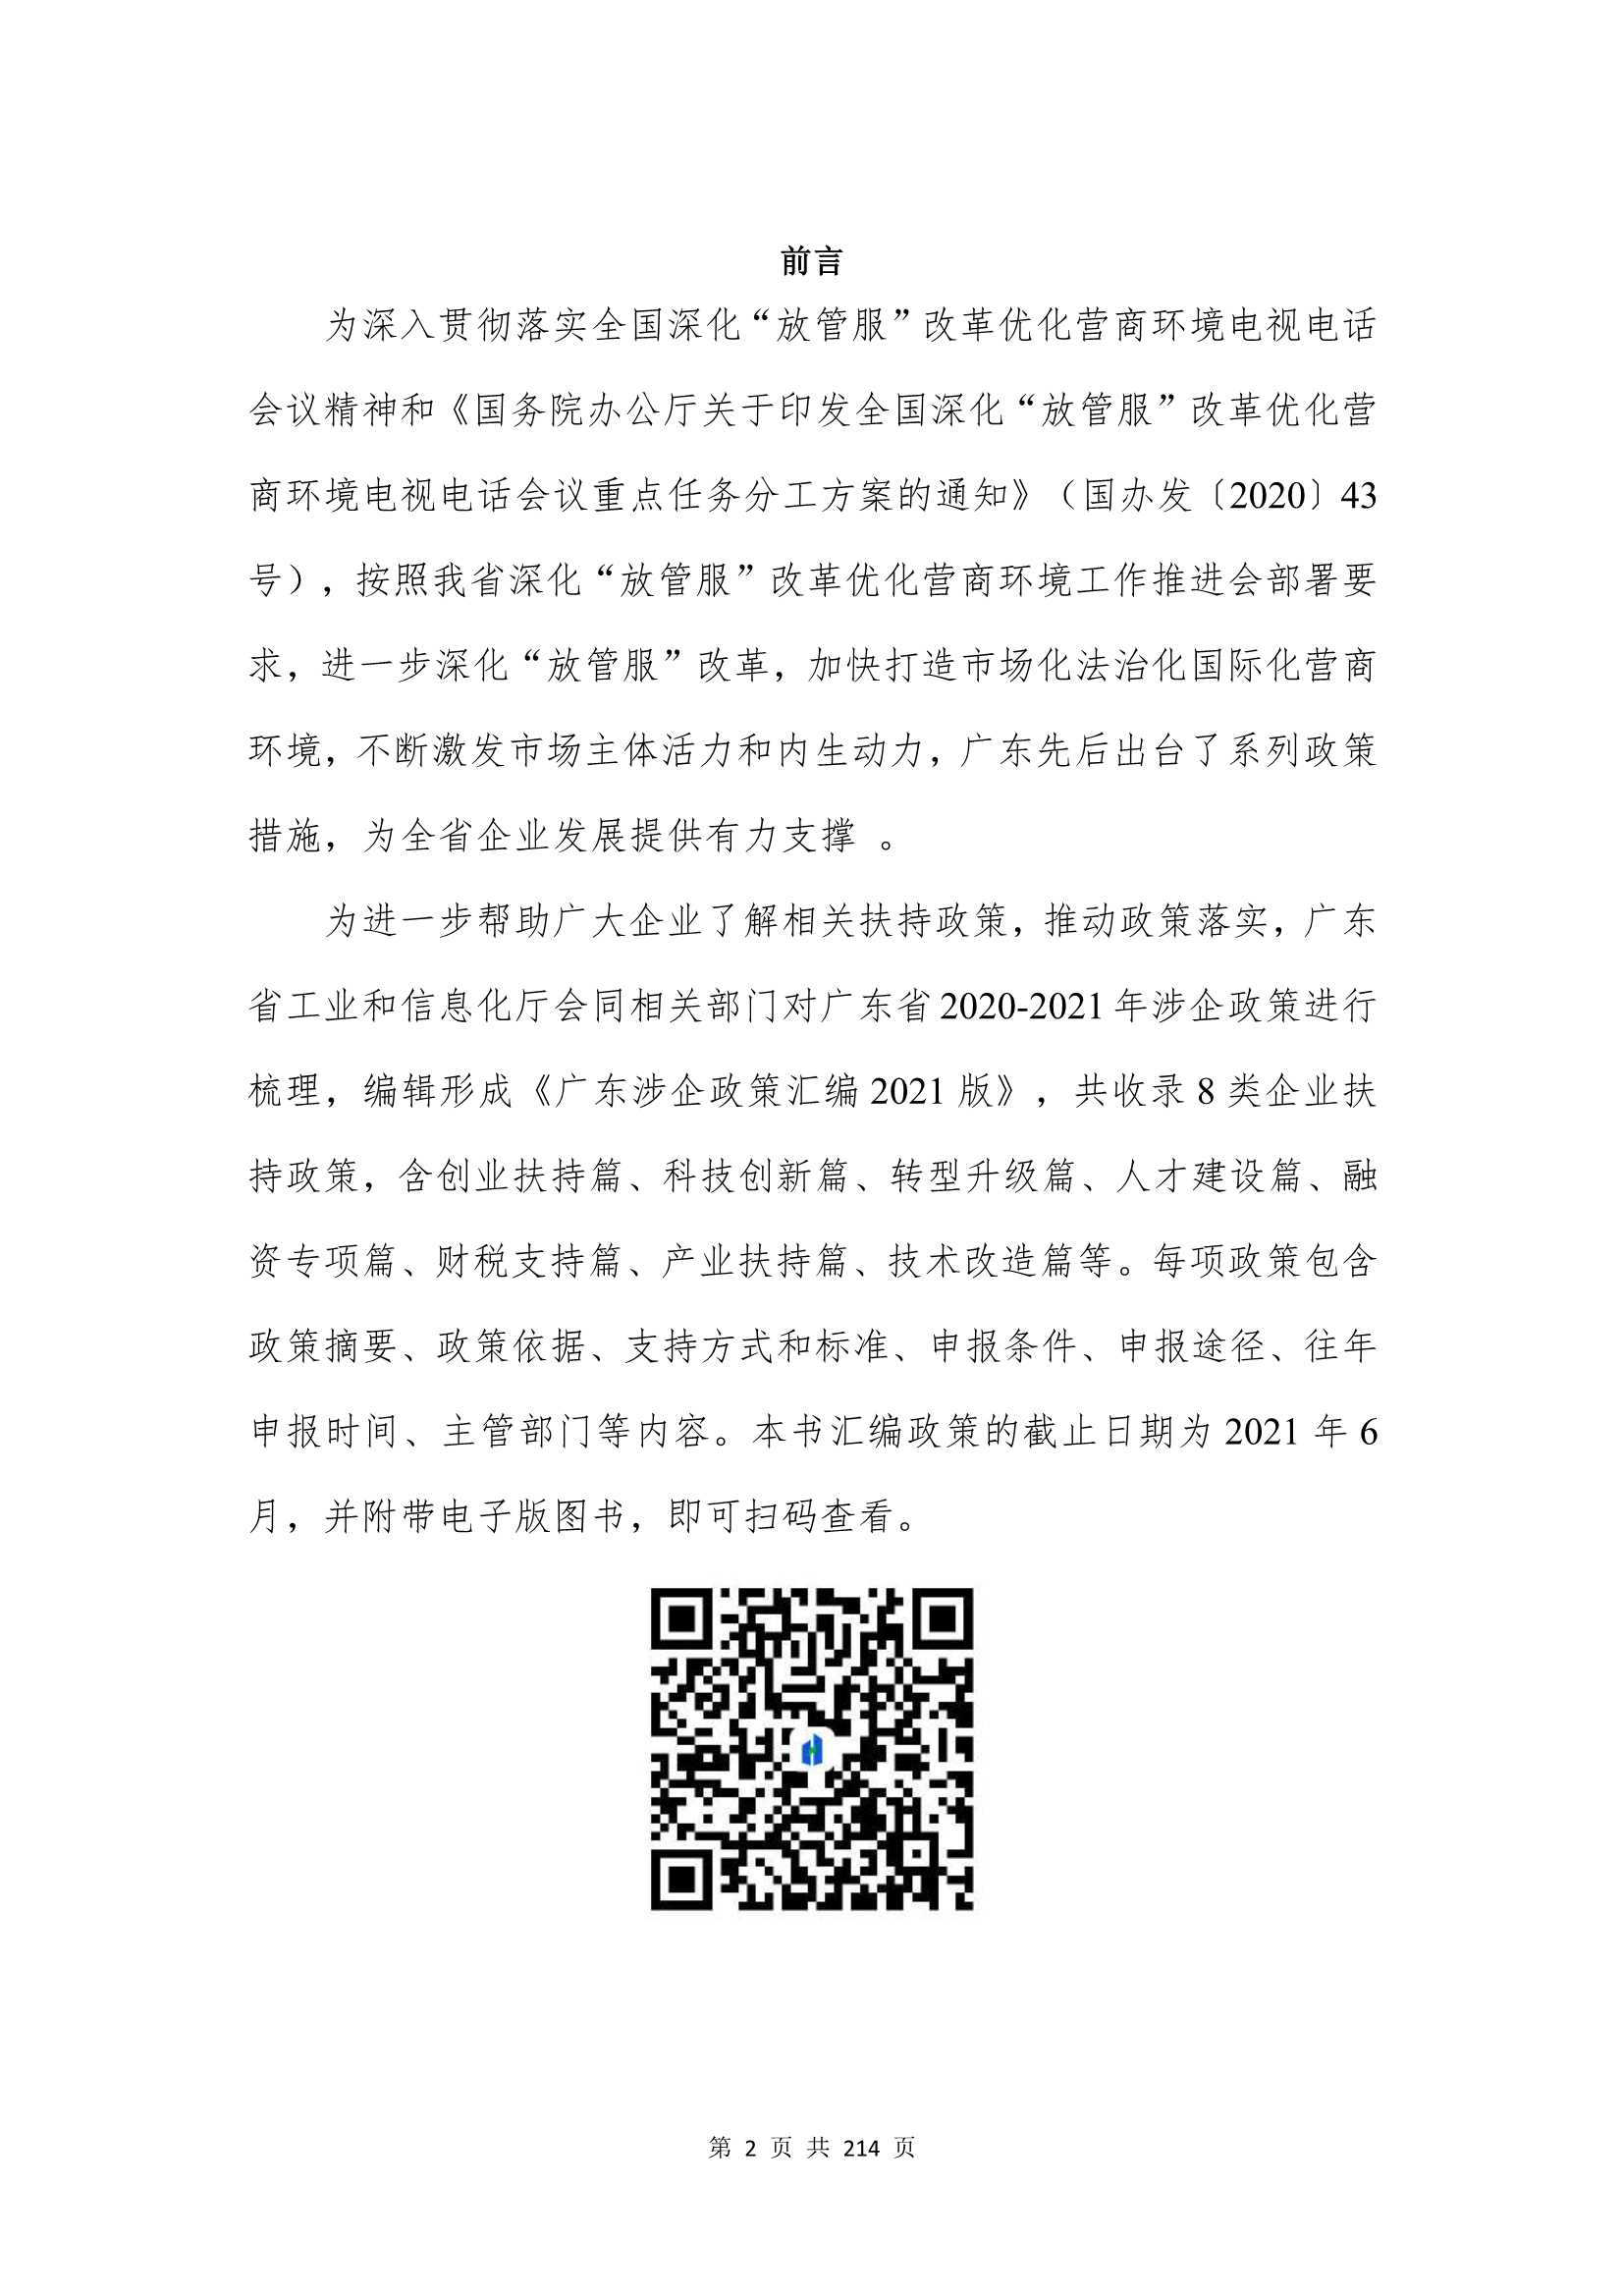 广东涉企政策汇编 2021 版-2022.01-214页